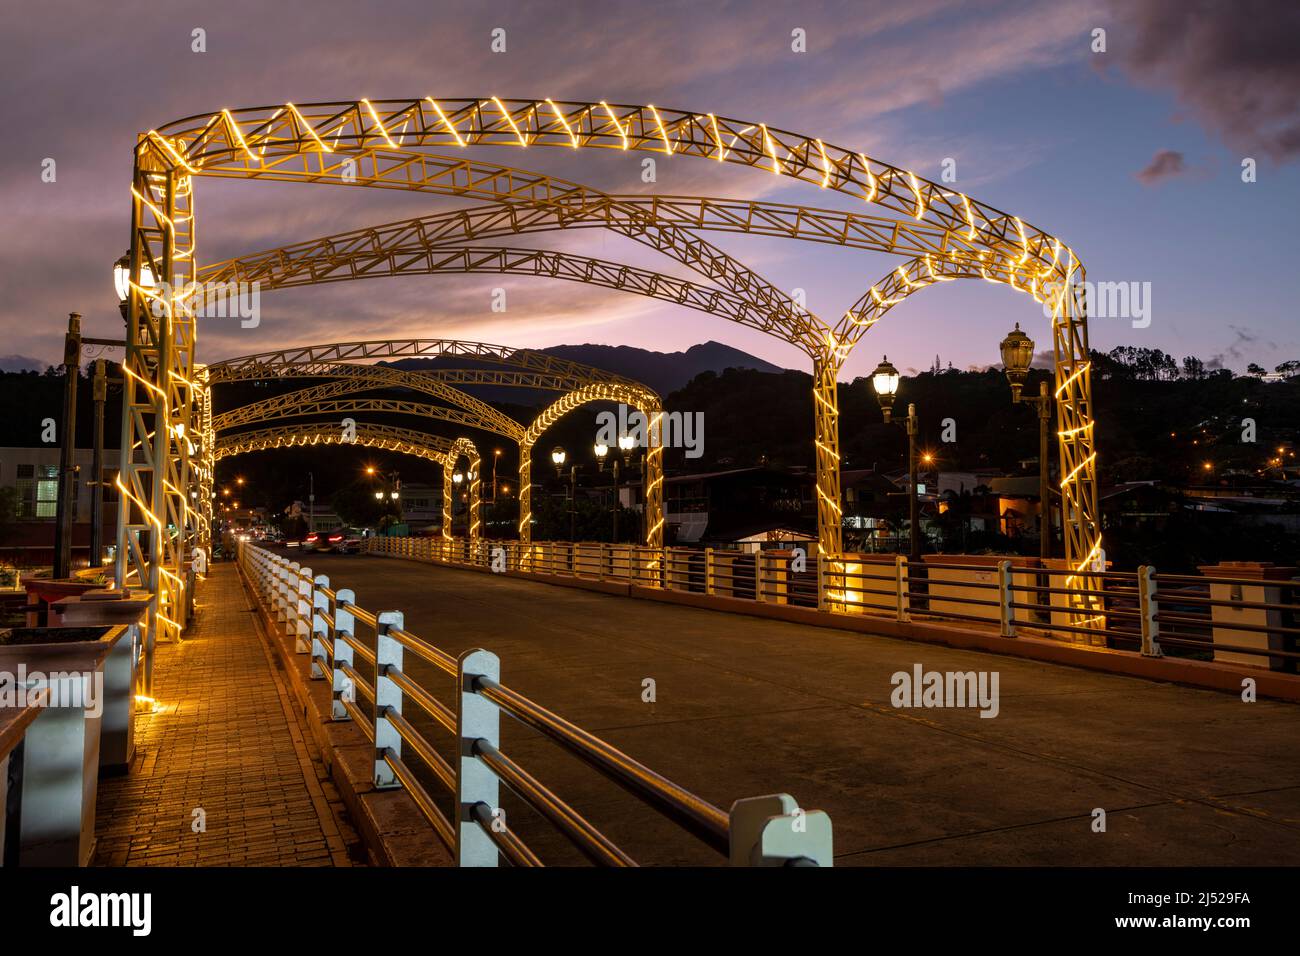 Crépuscule au pont à travers la rivière Caldera qui traverse le centre de Boquete, les montagnes de Chiriqui, Panama, Amérique centrale. Banque D'Images